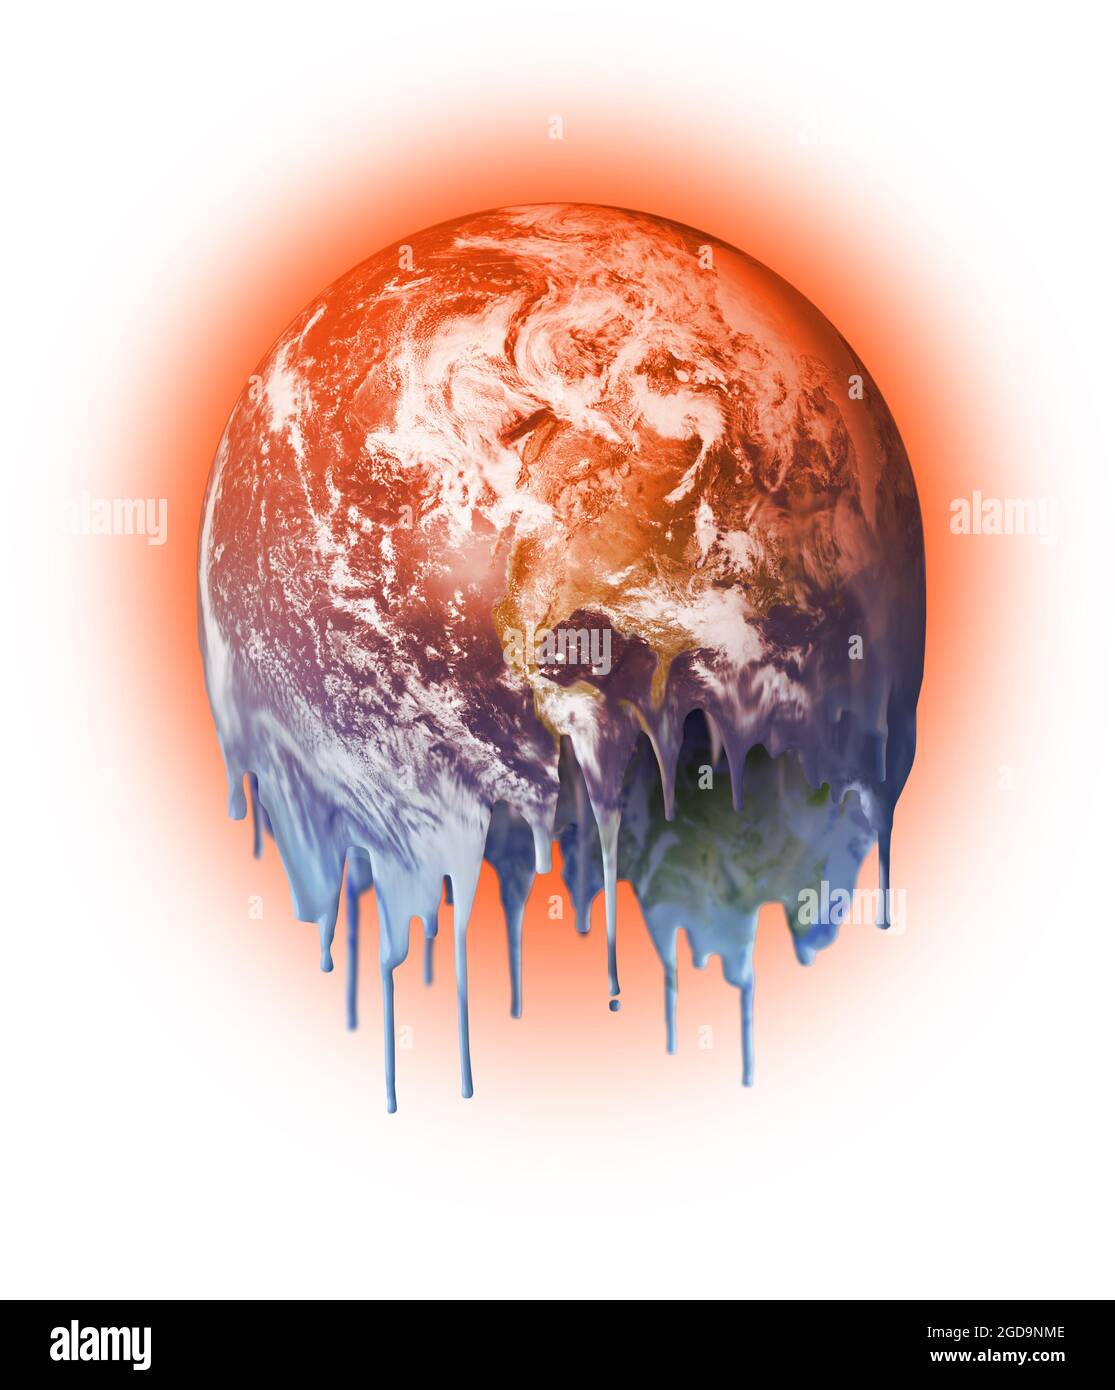 Schmelzender heißer und tropfender unbewohnbarer Planet Erde, Konzept der globalen Erwärmung des Klimawandels Stockfoto